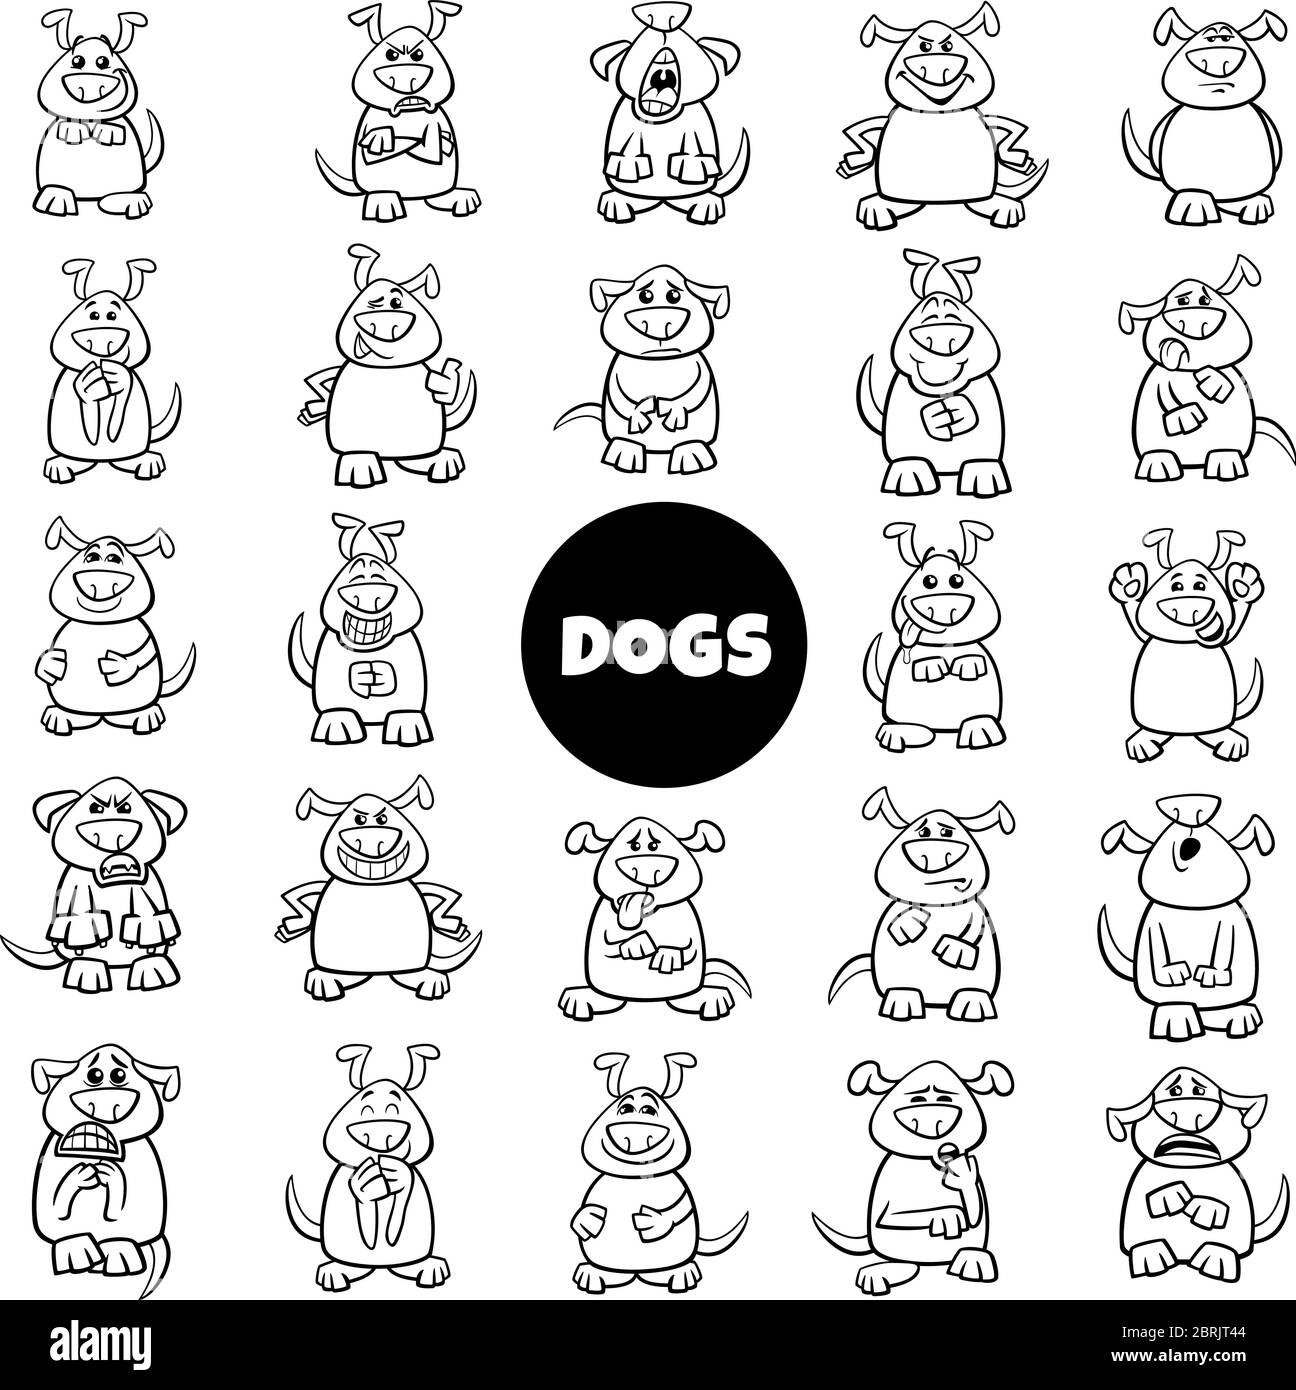 Schwarz-Weiß Cartoon Illustration von Hund Charaktere Emotionen und Stimmungen Big Set Stock Vektor